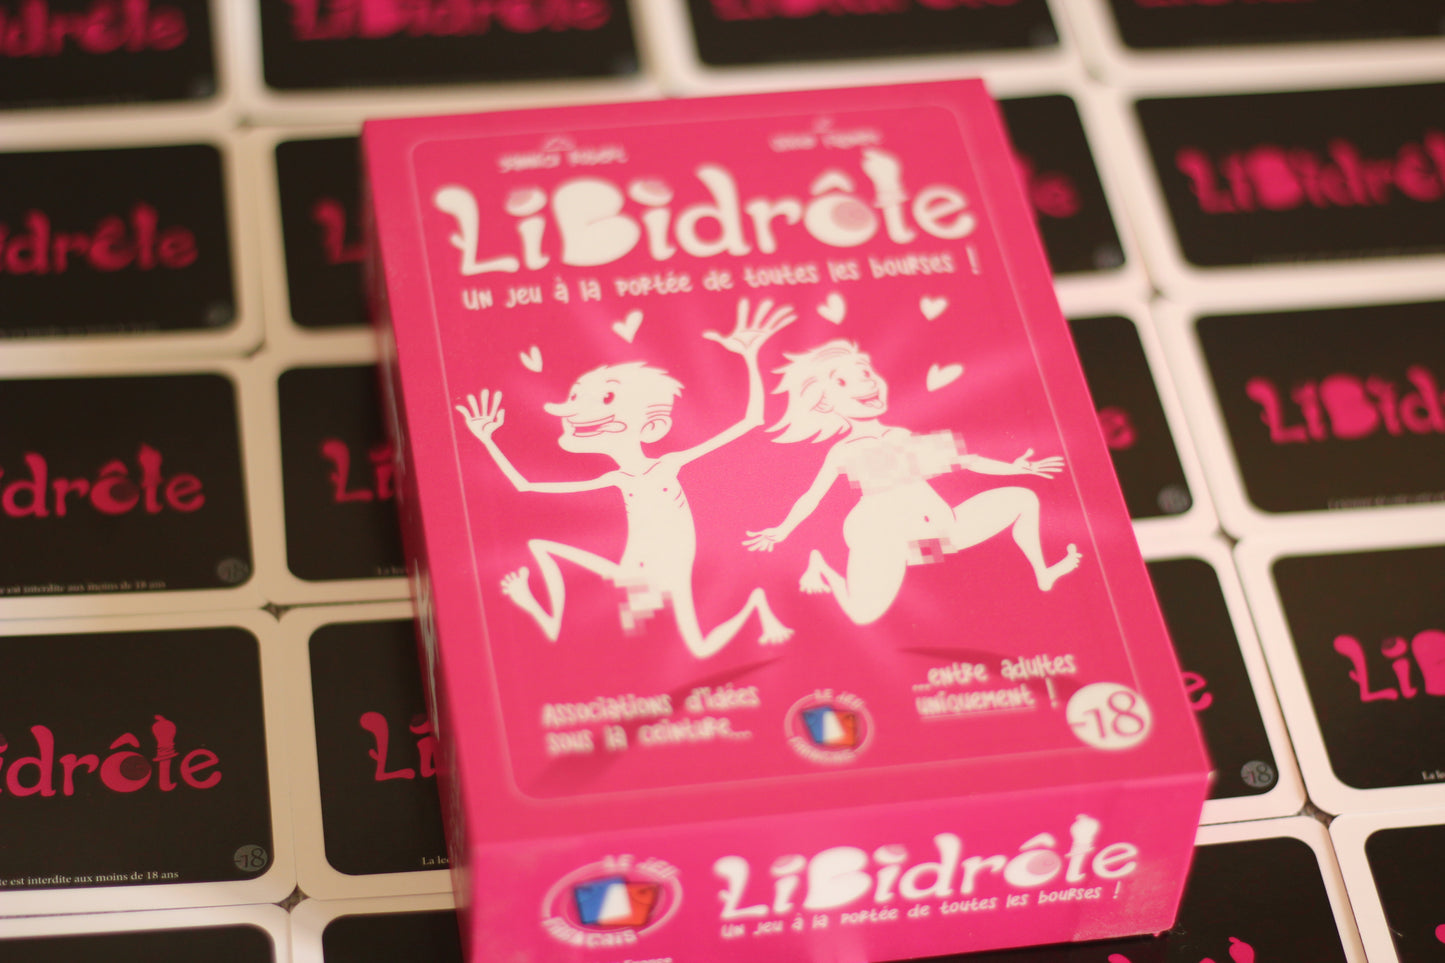 Libidrôle (Interdit aux -18ans) - Boîte Collector